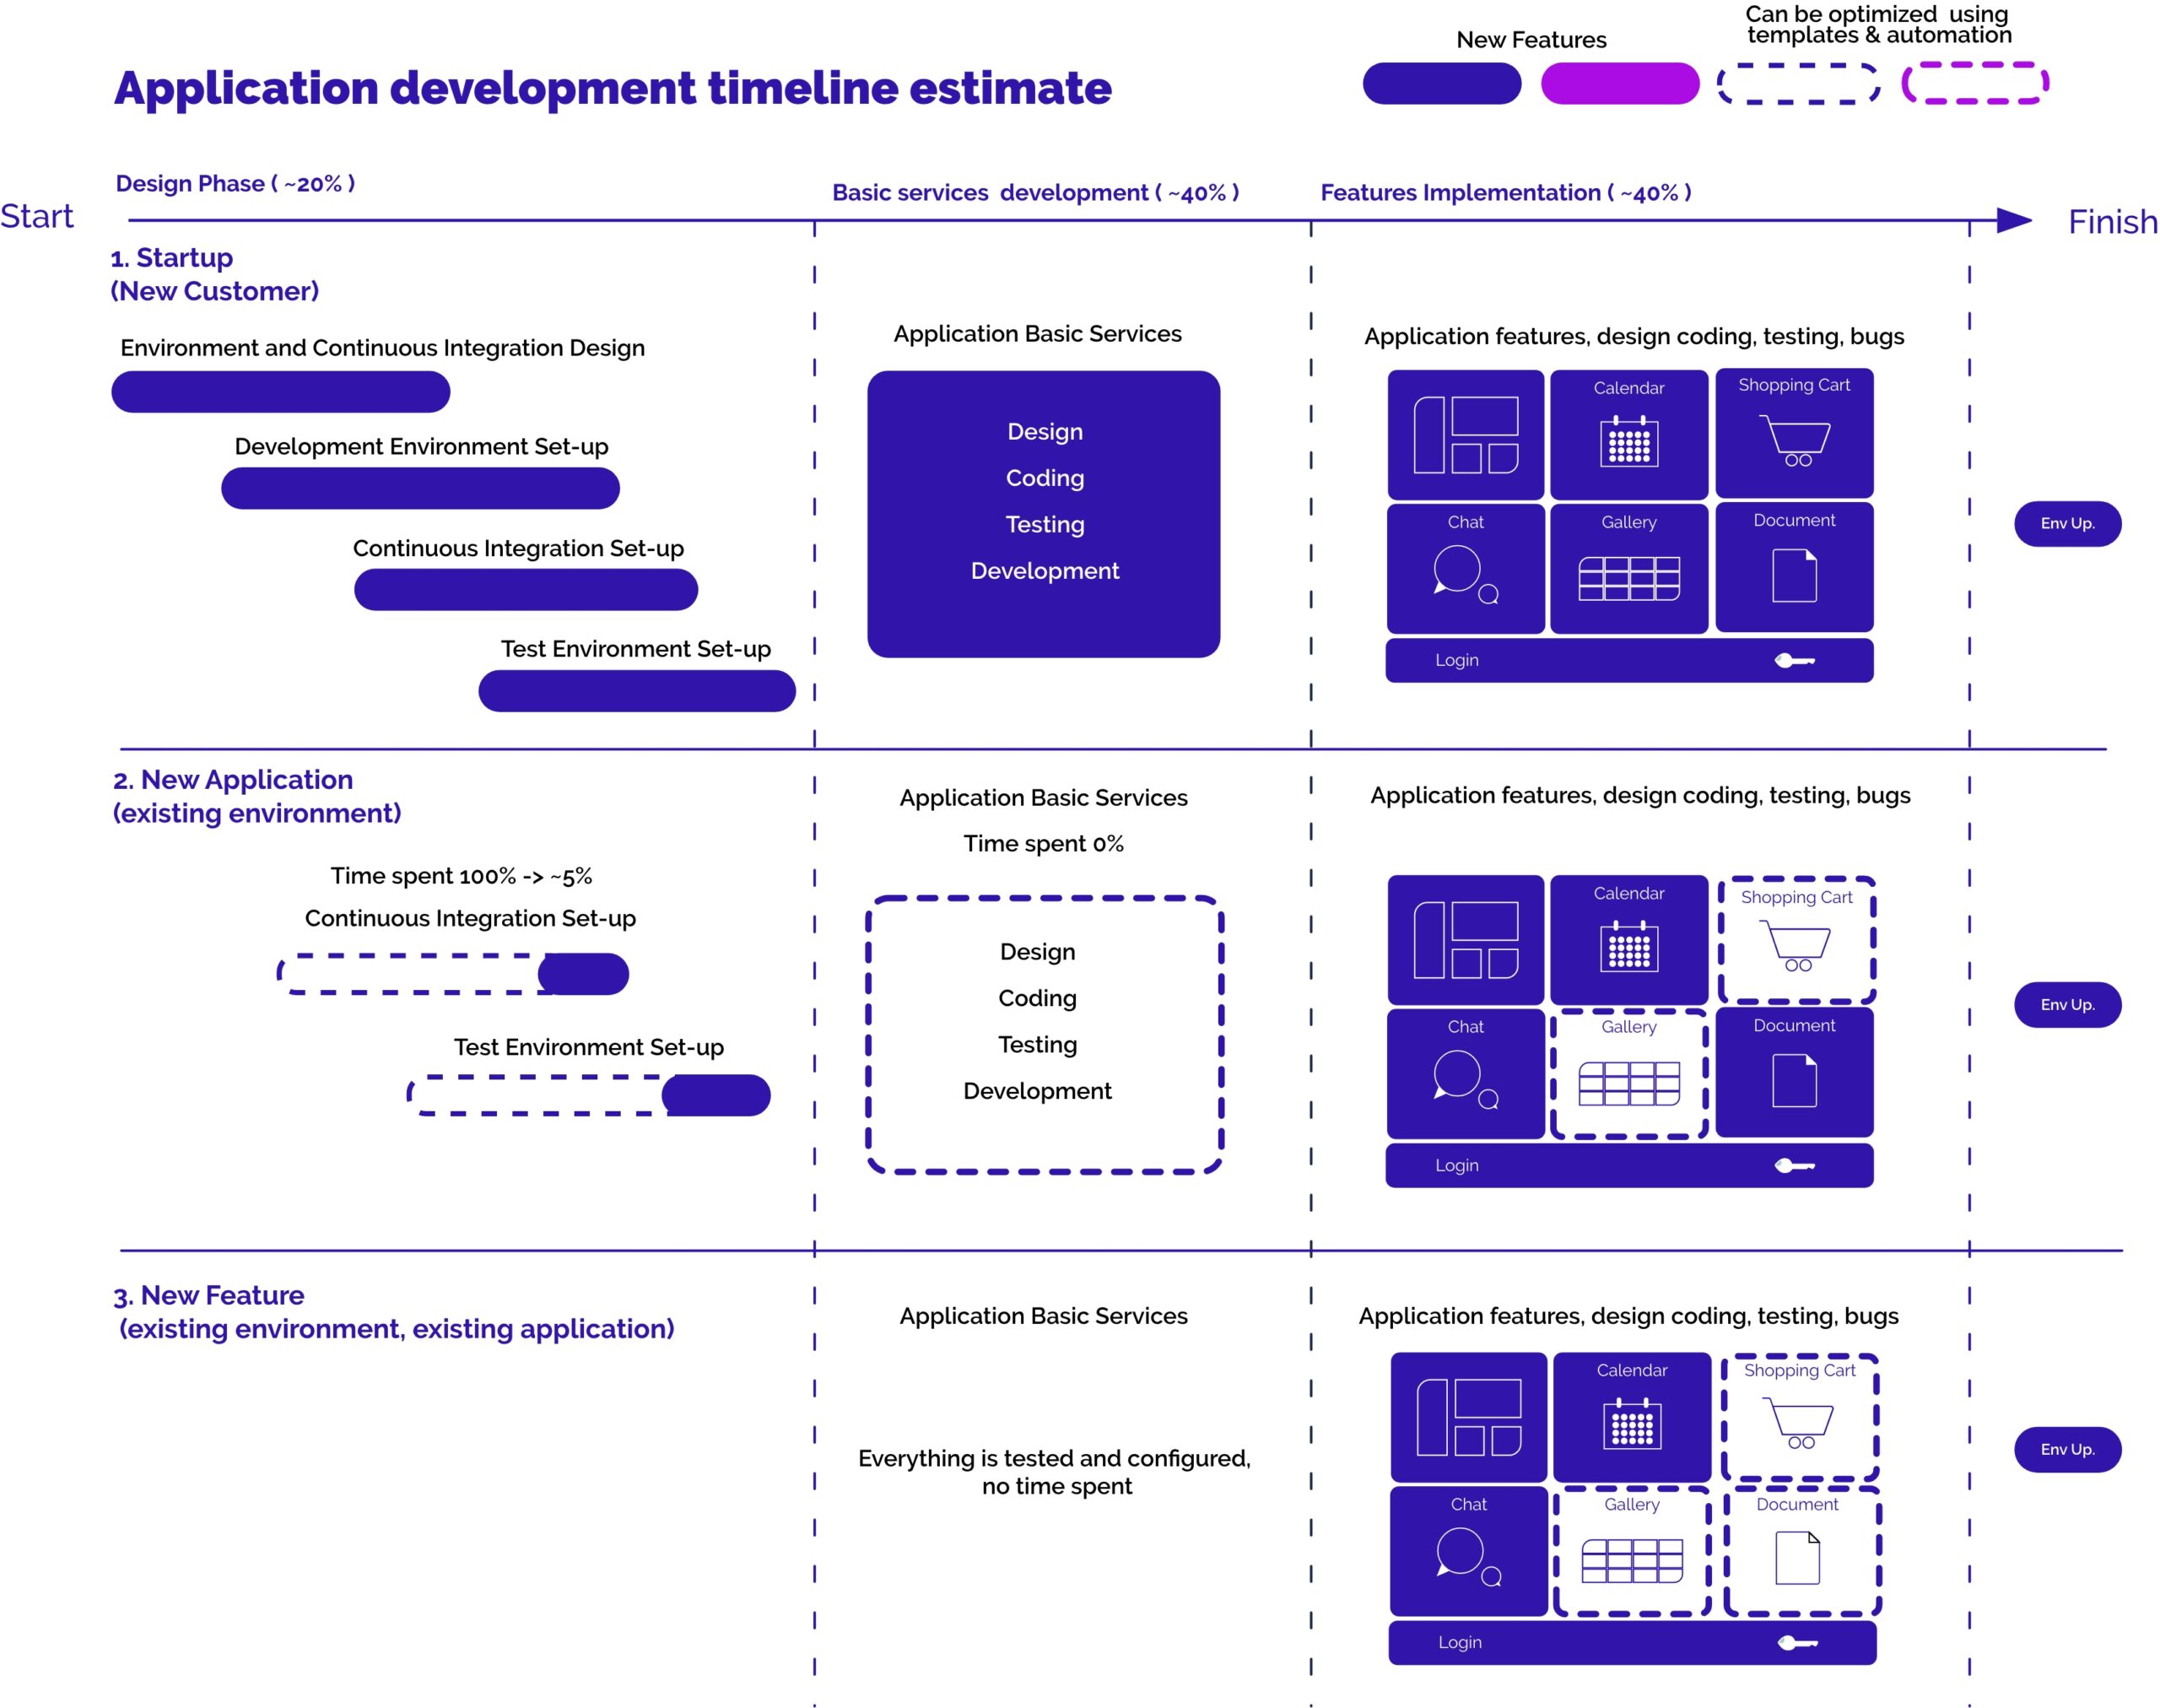 Application development timeline depicted